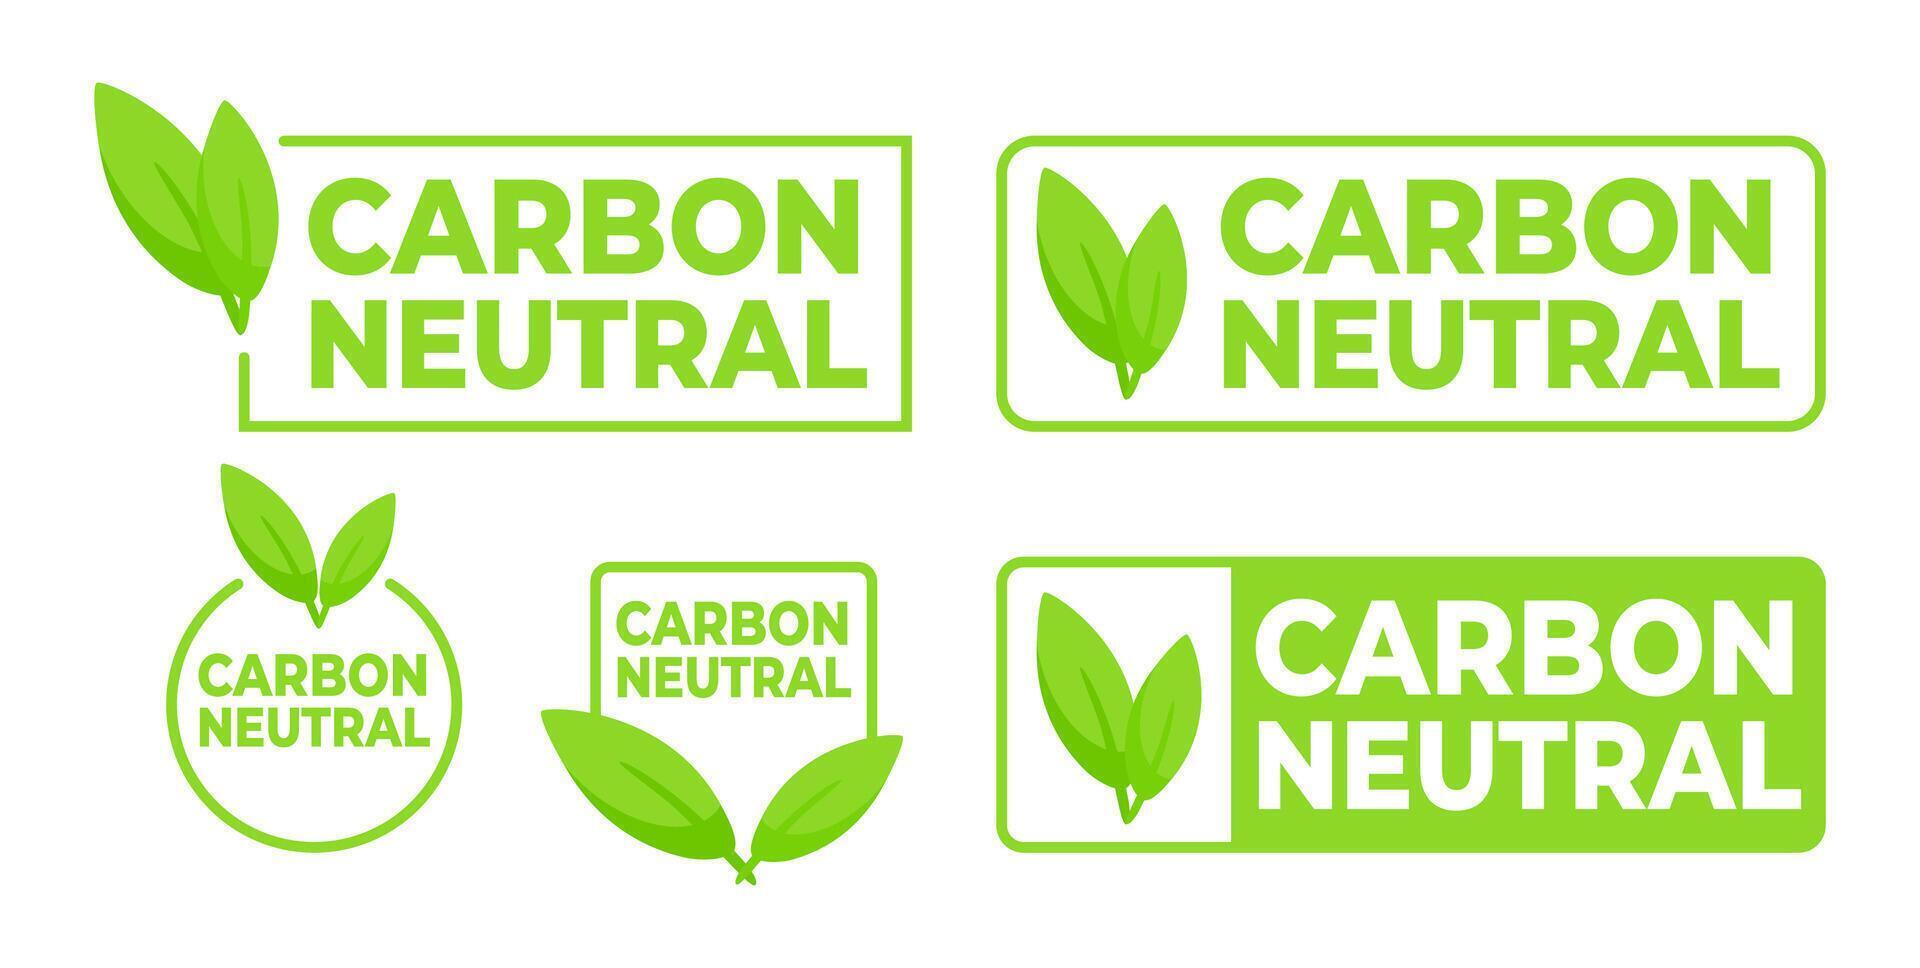 miljömässigt medveten etiketter i grön med kol neutral text och en blad symbol, för Produkter stödjande hållbar praxis. vektor